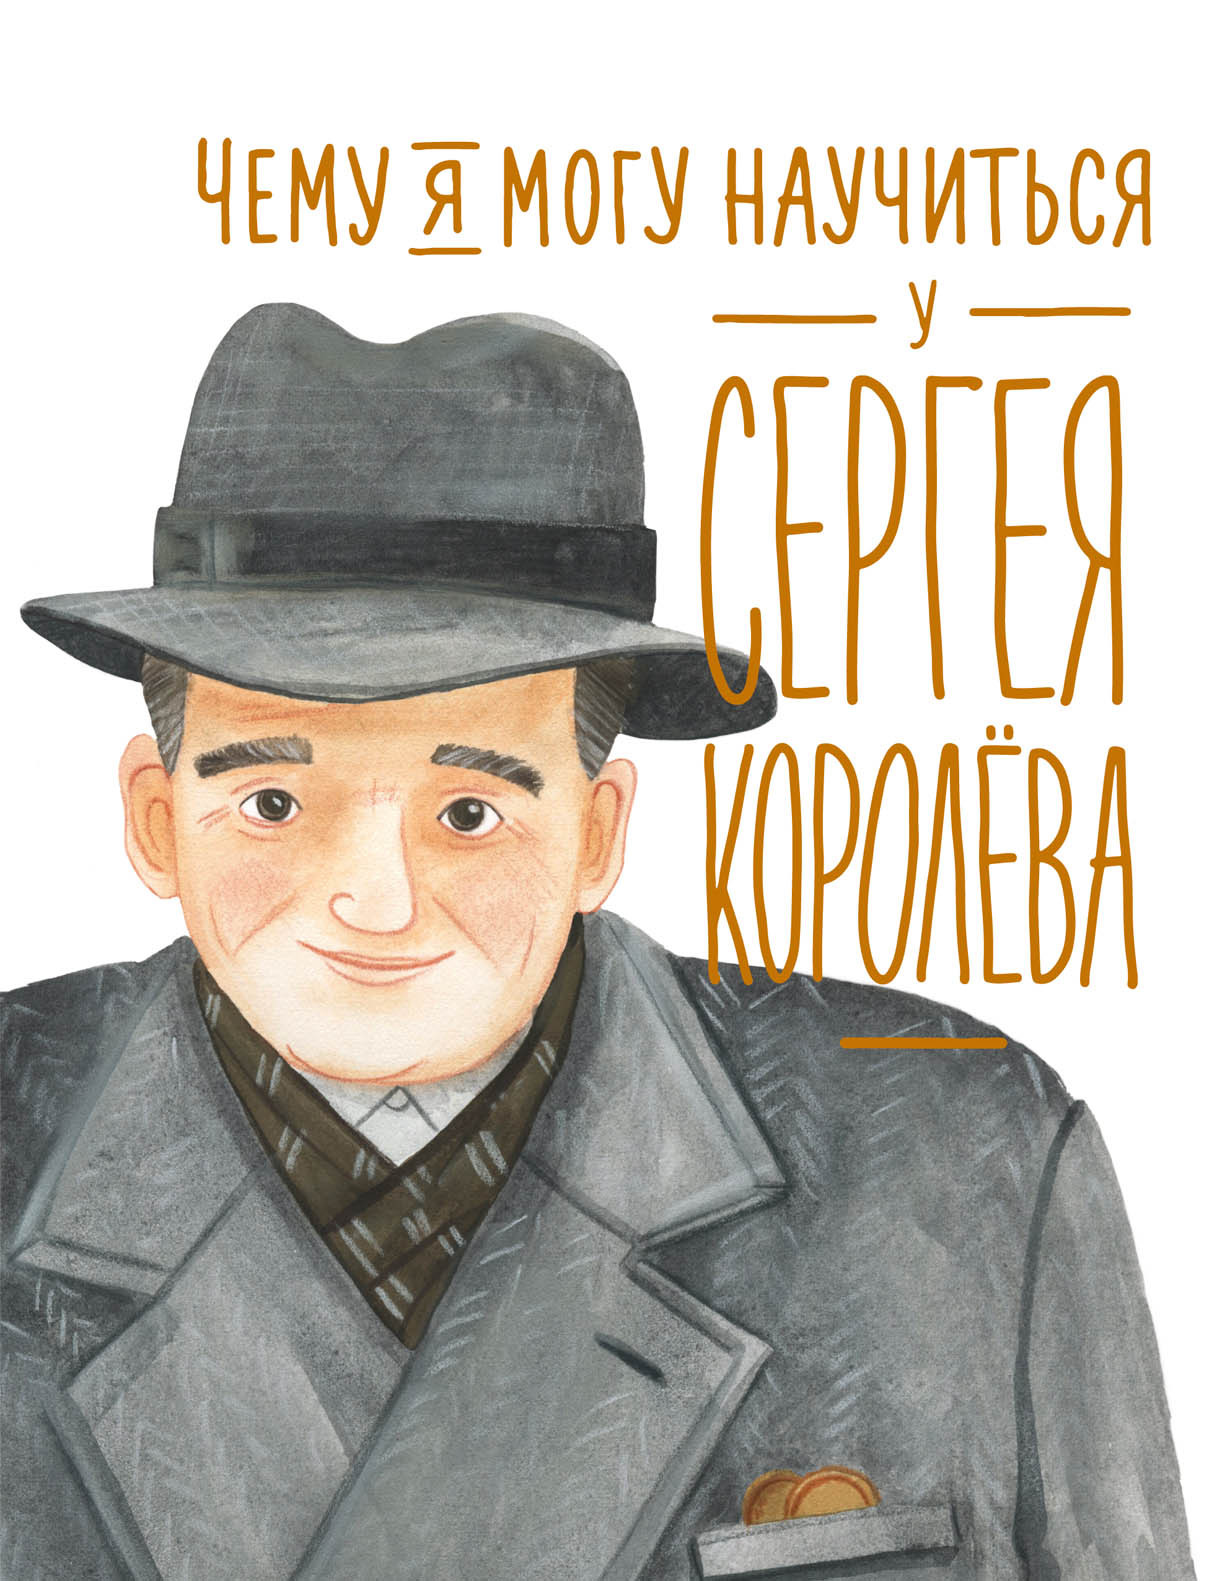 Чему я могу научиться у Сергея Королёва обложка.